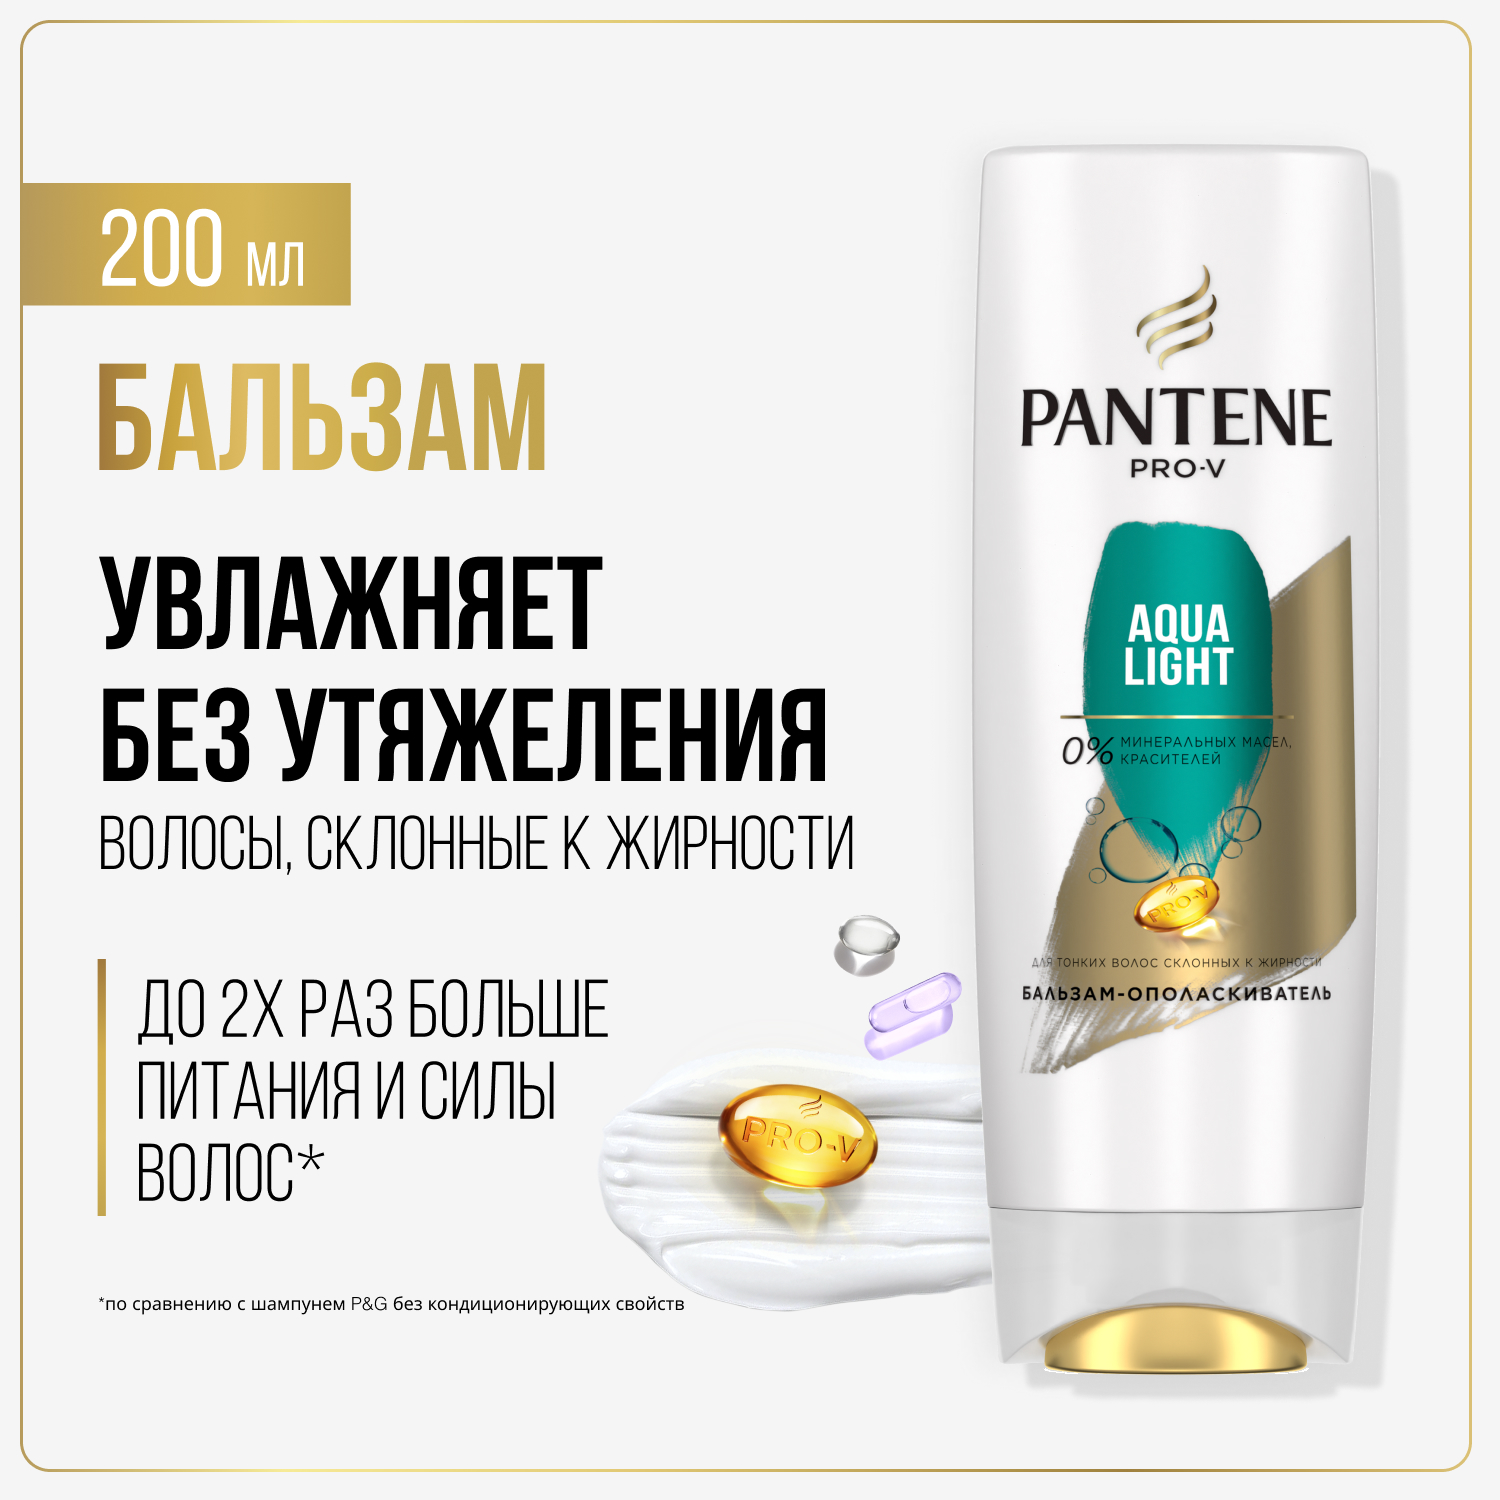 Бальзам для волос Pantene Aqua Light легкий, питательный и укрепляющий 200 мл pantene бальзам ополаскиватель питательный коктейль